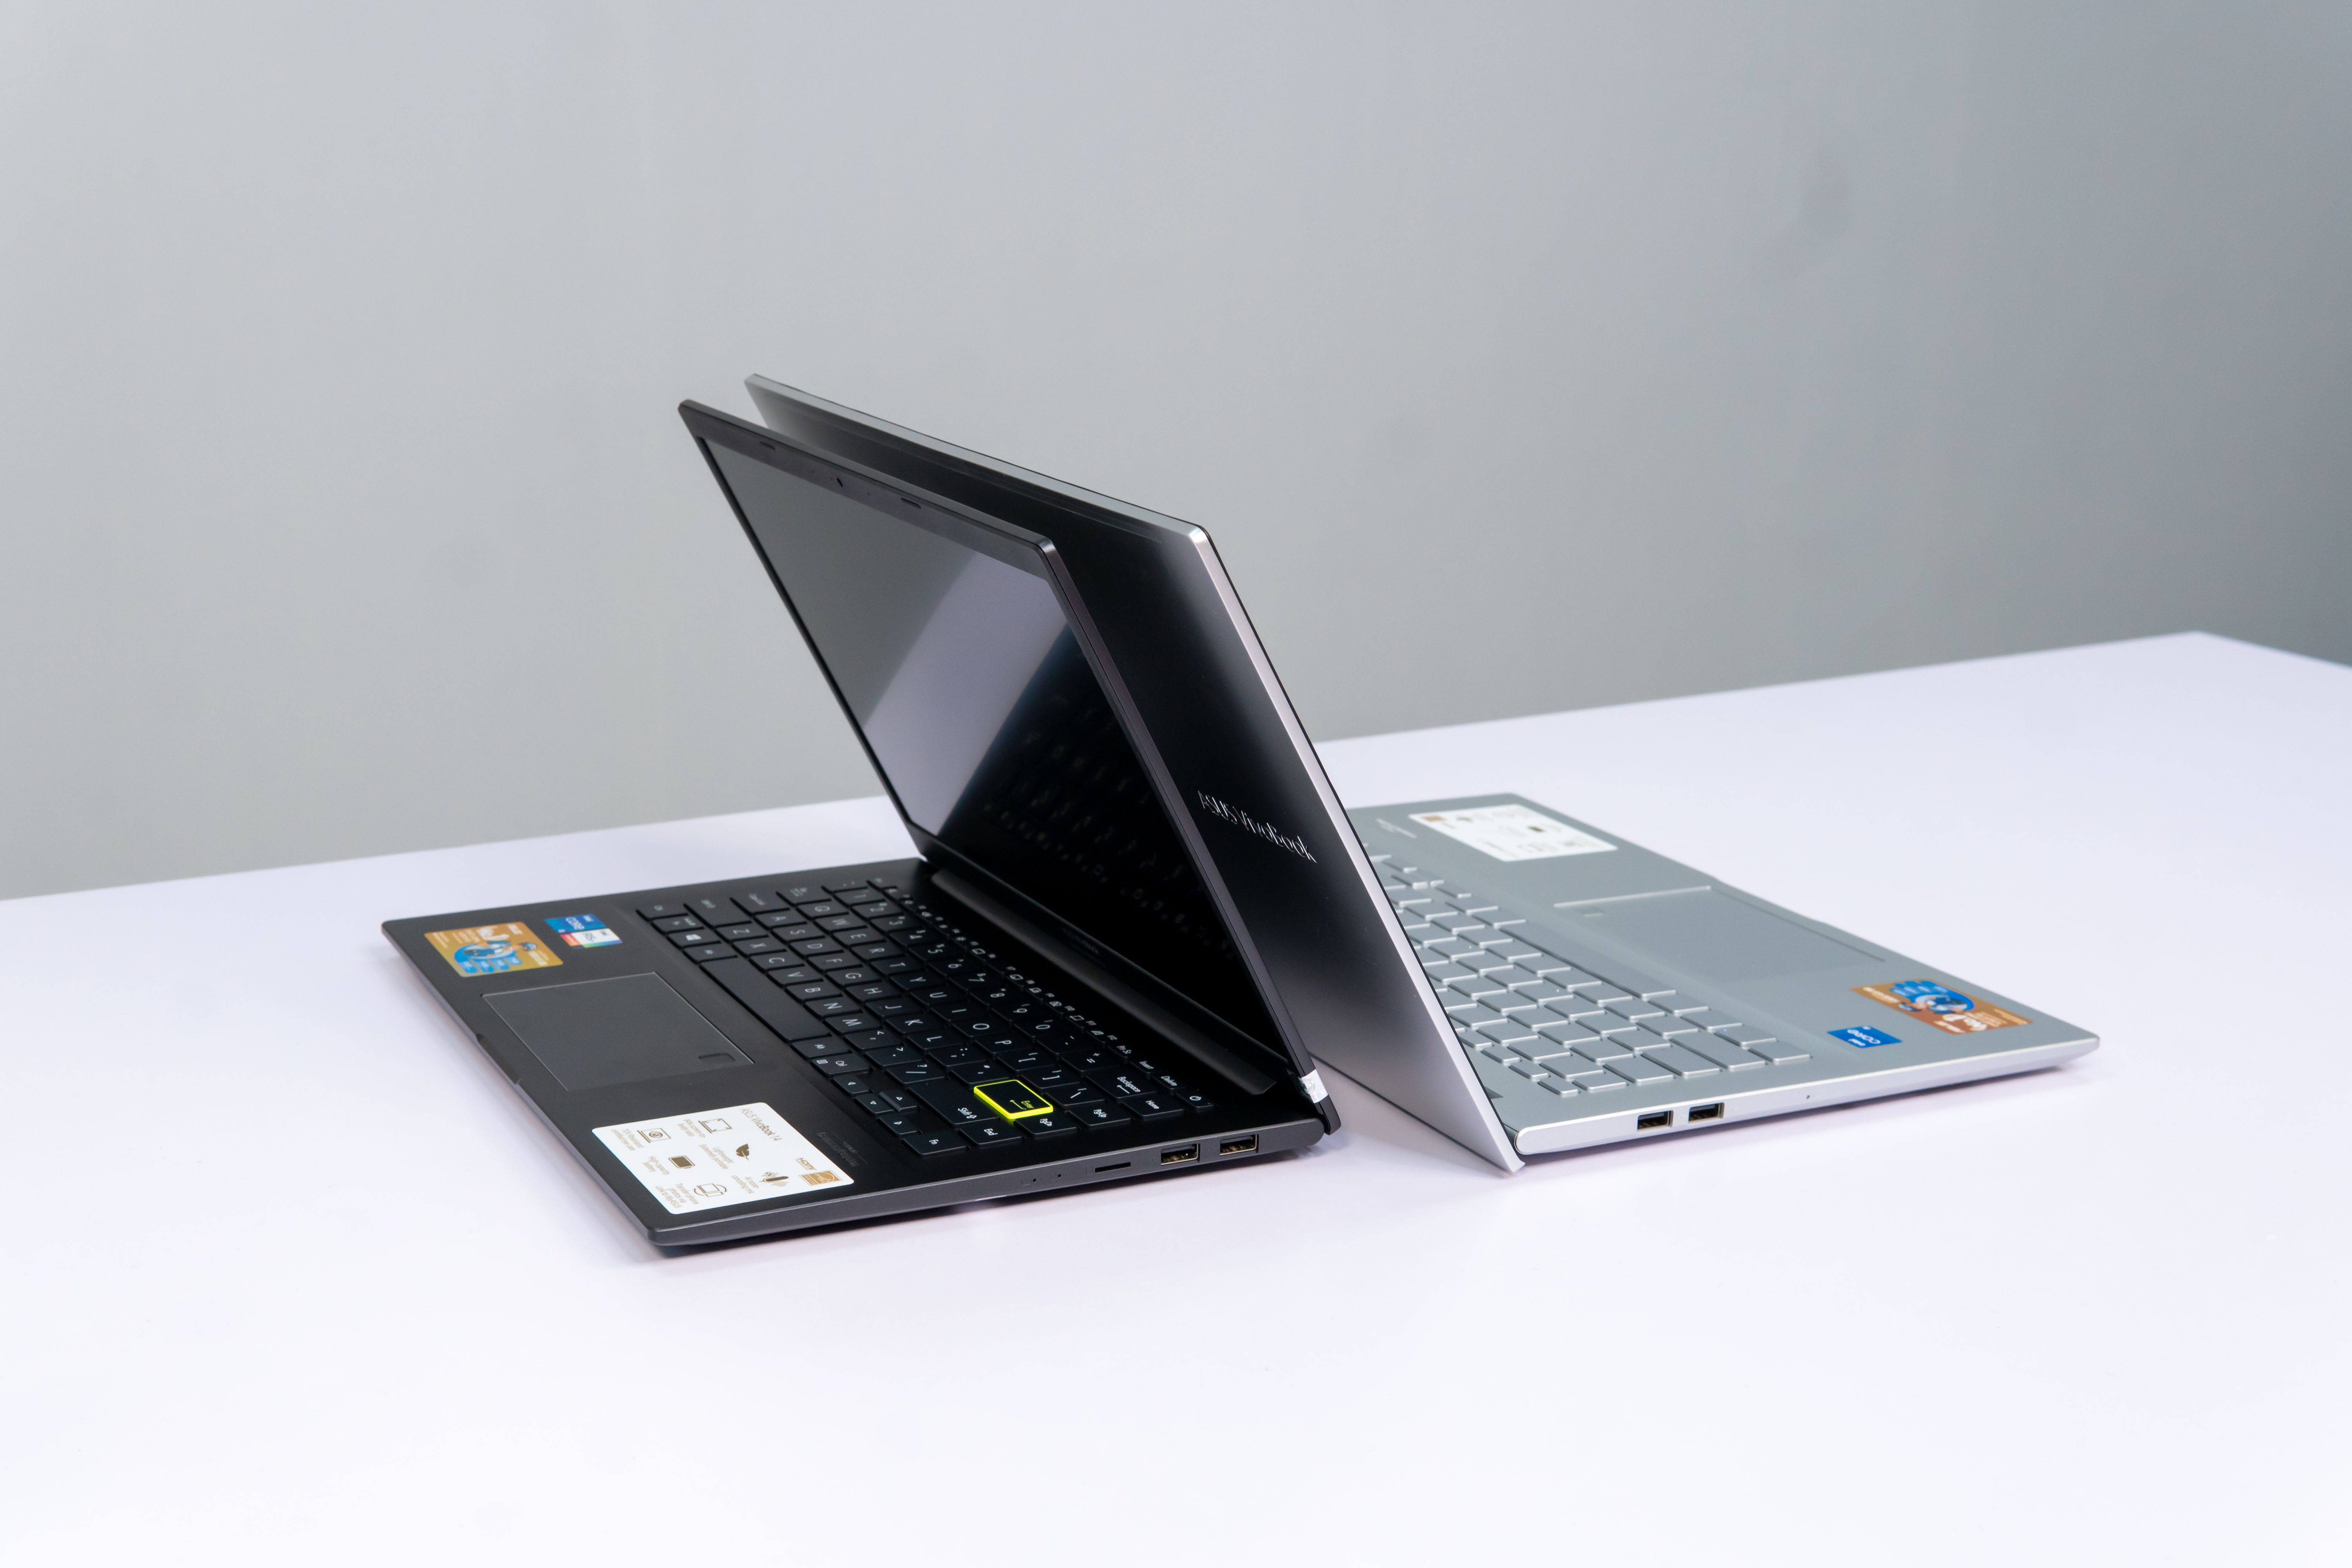 Asus Vivobook A415 - A515 - Siêu phẩm laptop văn phòng mỏng nhẹ, sang trọng - Chip intel thế hệ 11 chơi được game 